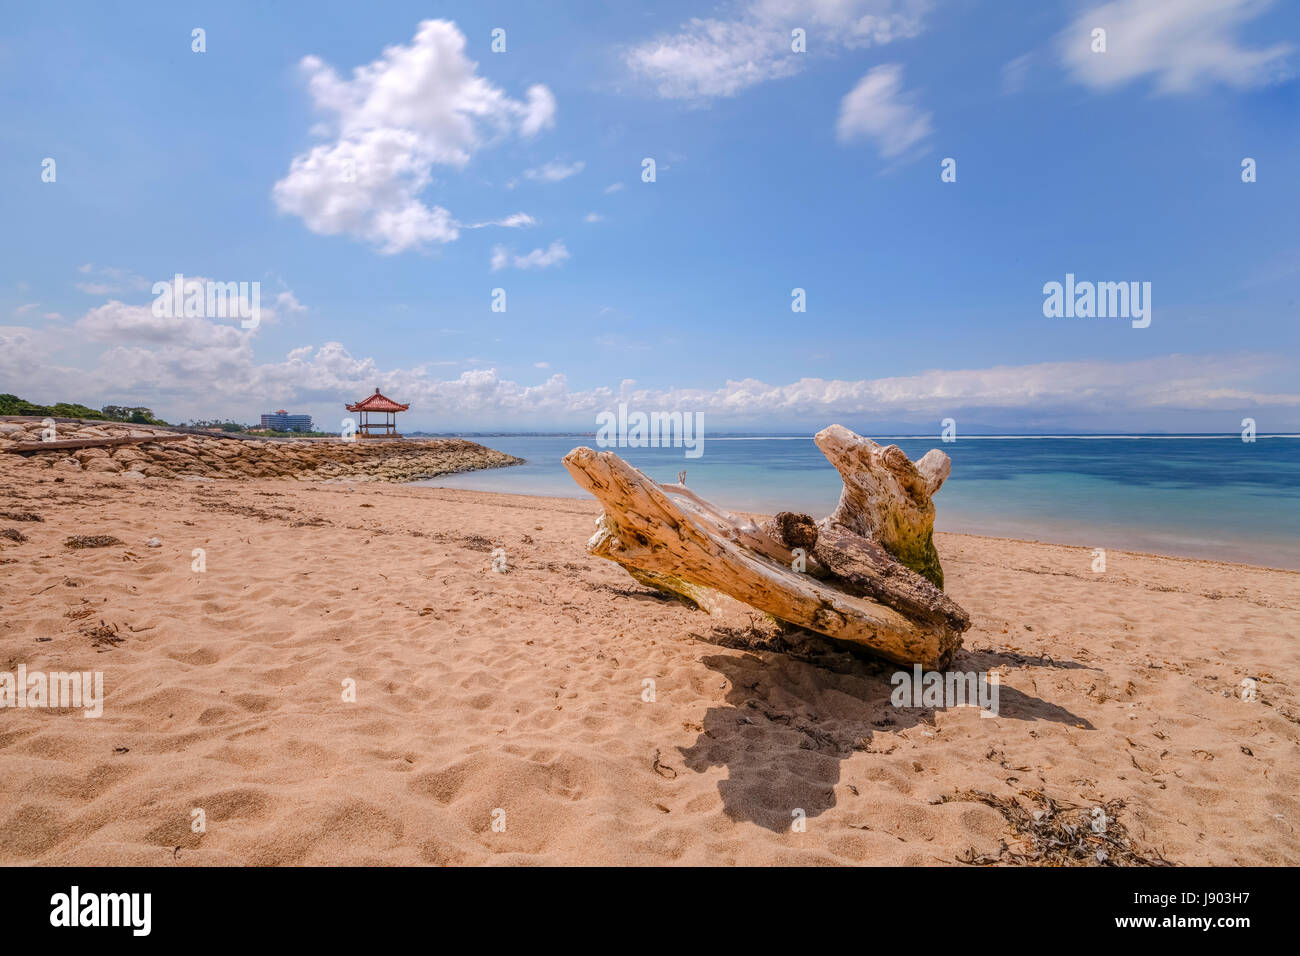 La plage de Sanur, Bali, Indonésie, Asie Banque D'Images